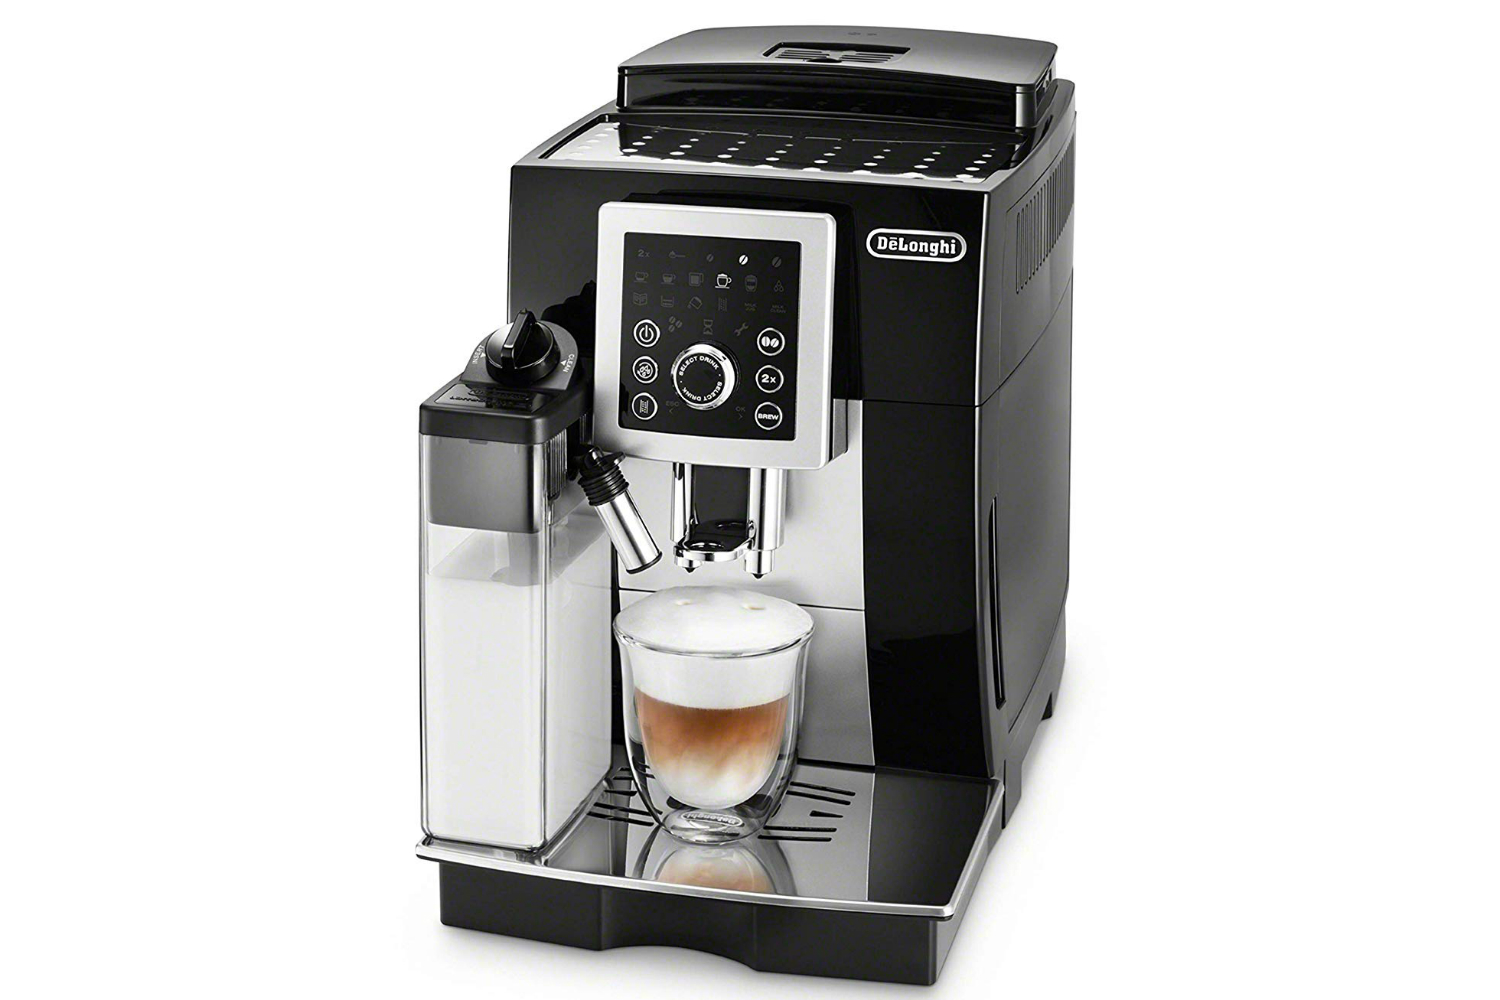 https://www.digitaltrends.com/wp-content/uploads/2019/05/delonghi-ecam23260sb-magnifica-smart-espresso-cappuccino-maker.jpg?fit=720%2C480&p=1